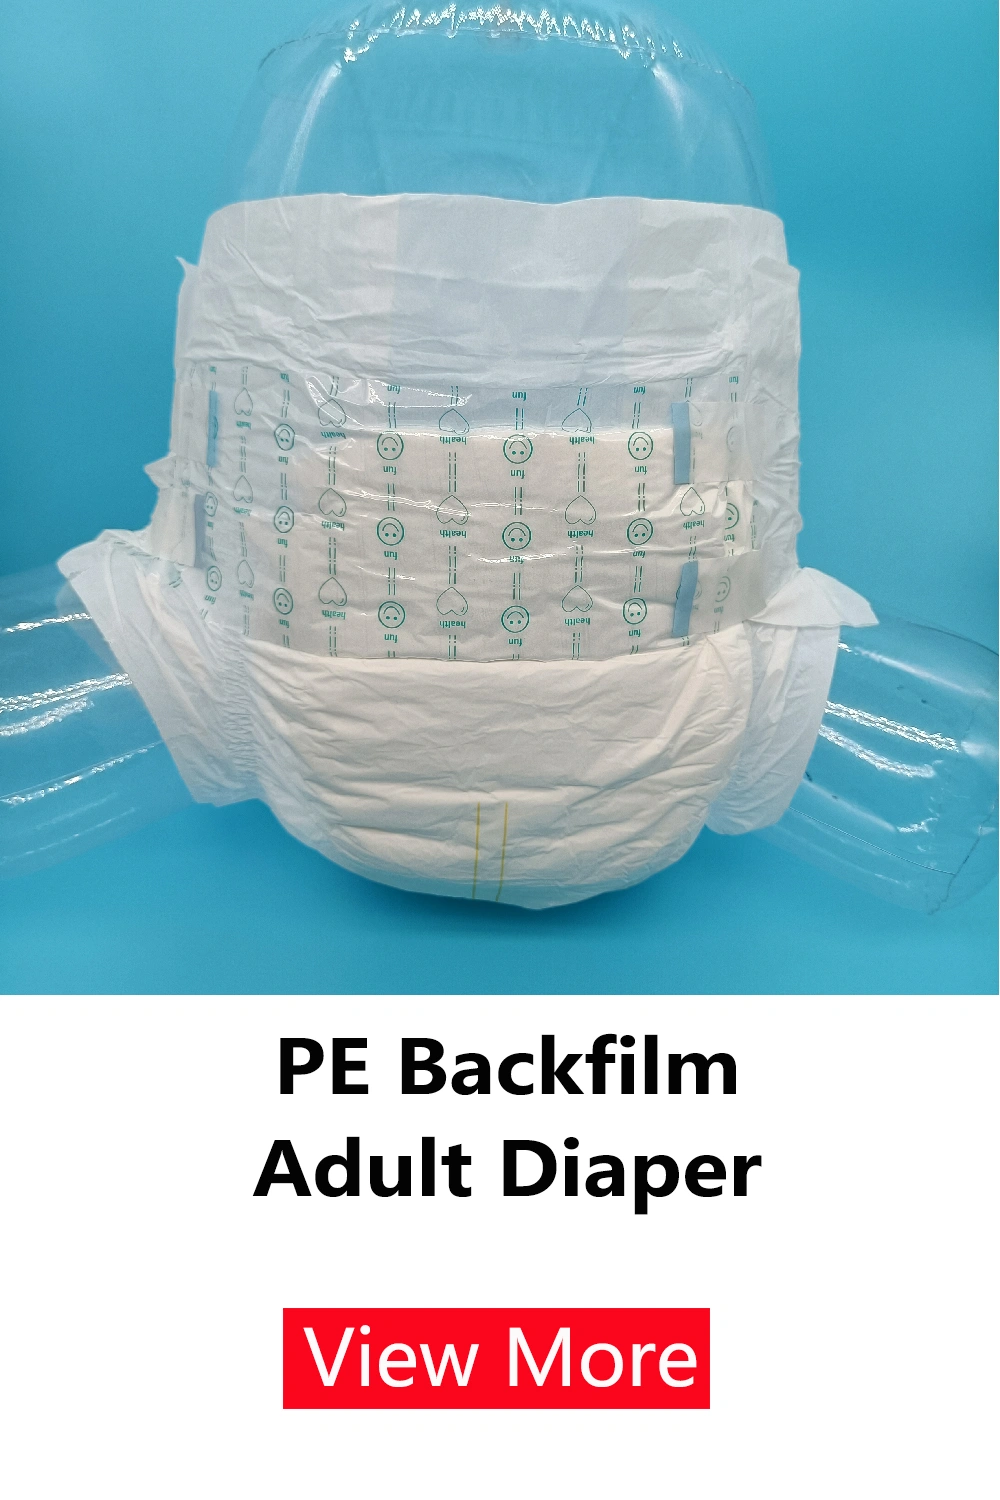 adult diaper pant pe backfilm adult diaper